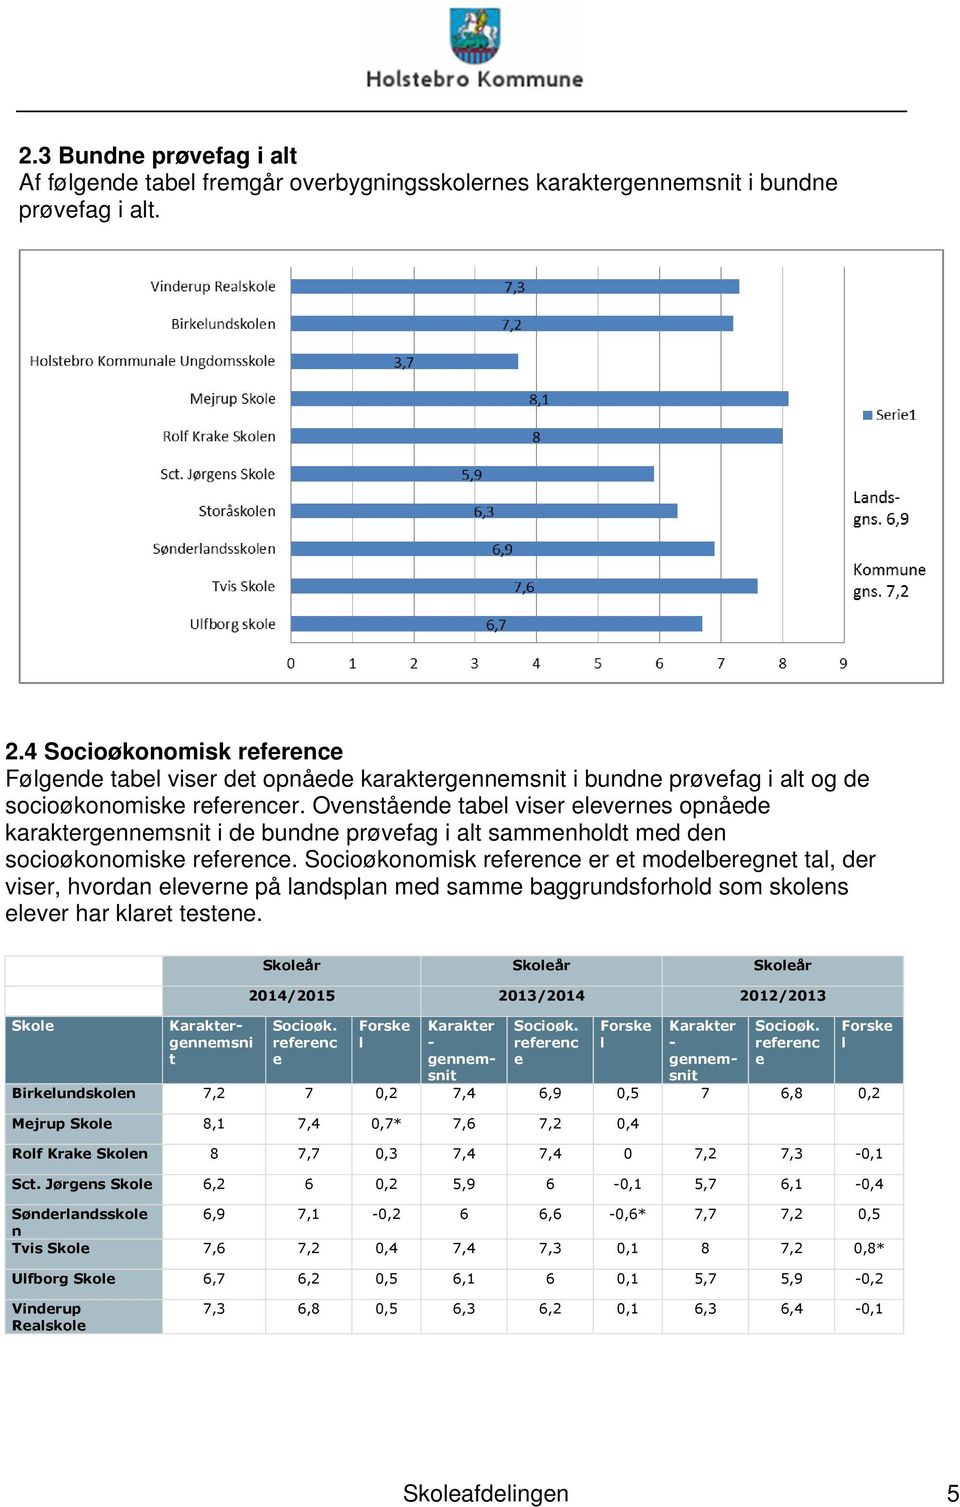 Ovenstående tabel viser elevernes opnåede karaktergennemsnit i de bundne prøvefag i alt sammenholdt med den socioøkonomiske reference.